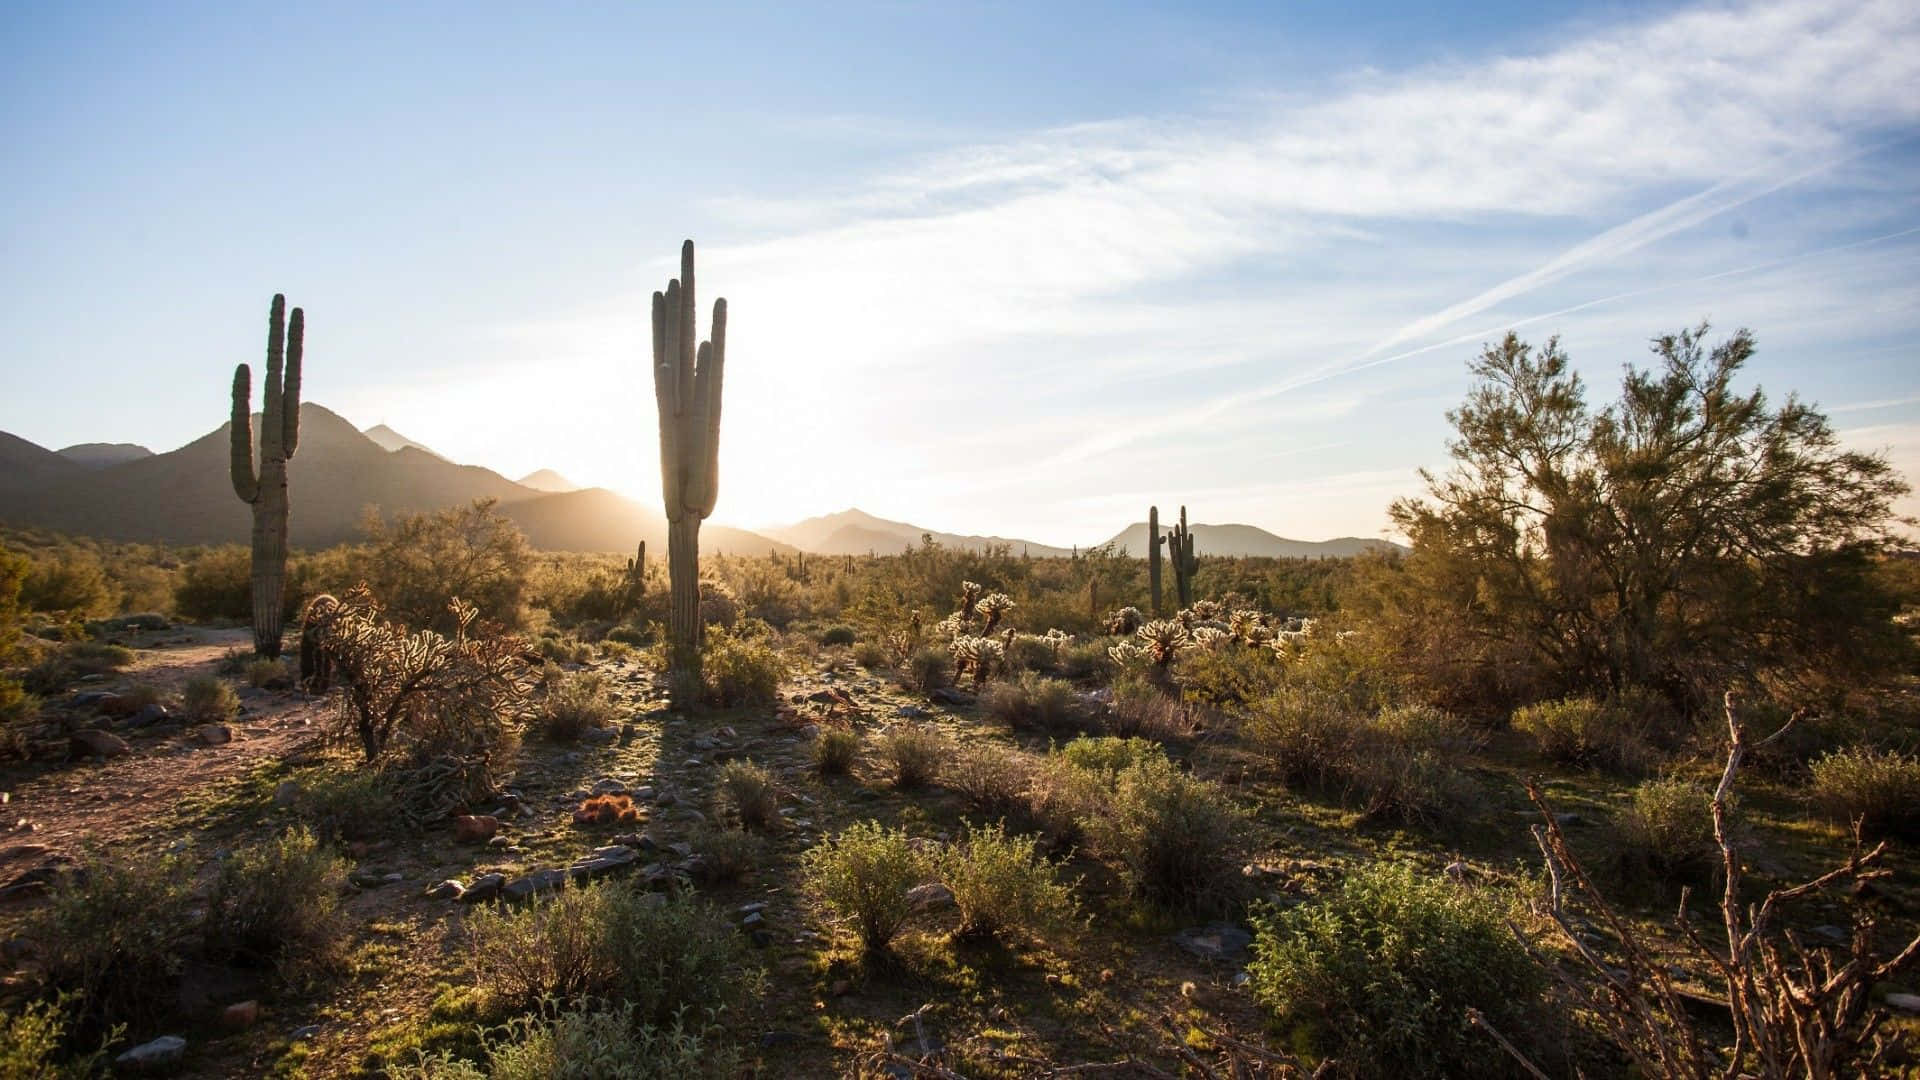 Faiun Viaggio In Arizona Per Ammirare La Bellezza Della Natura